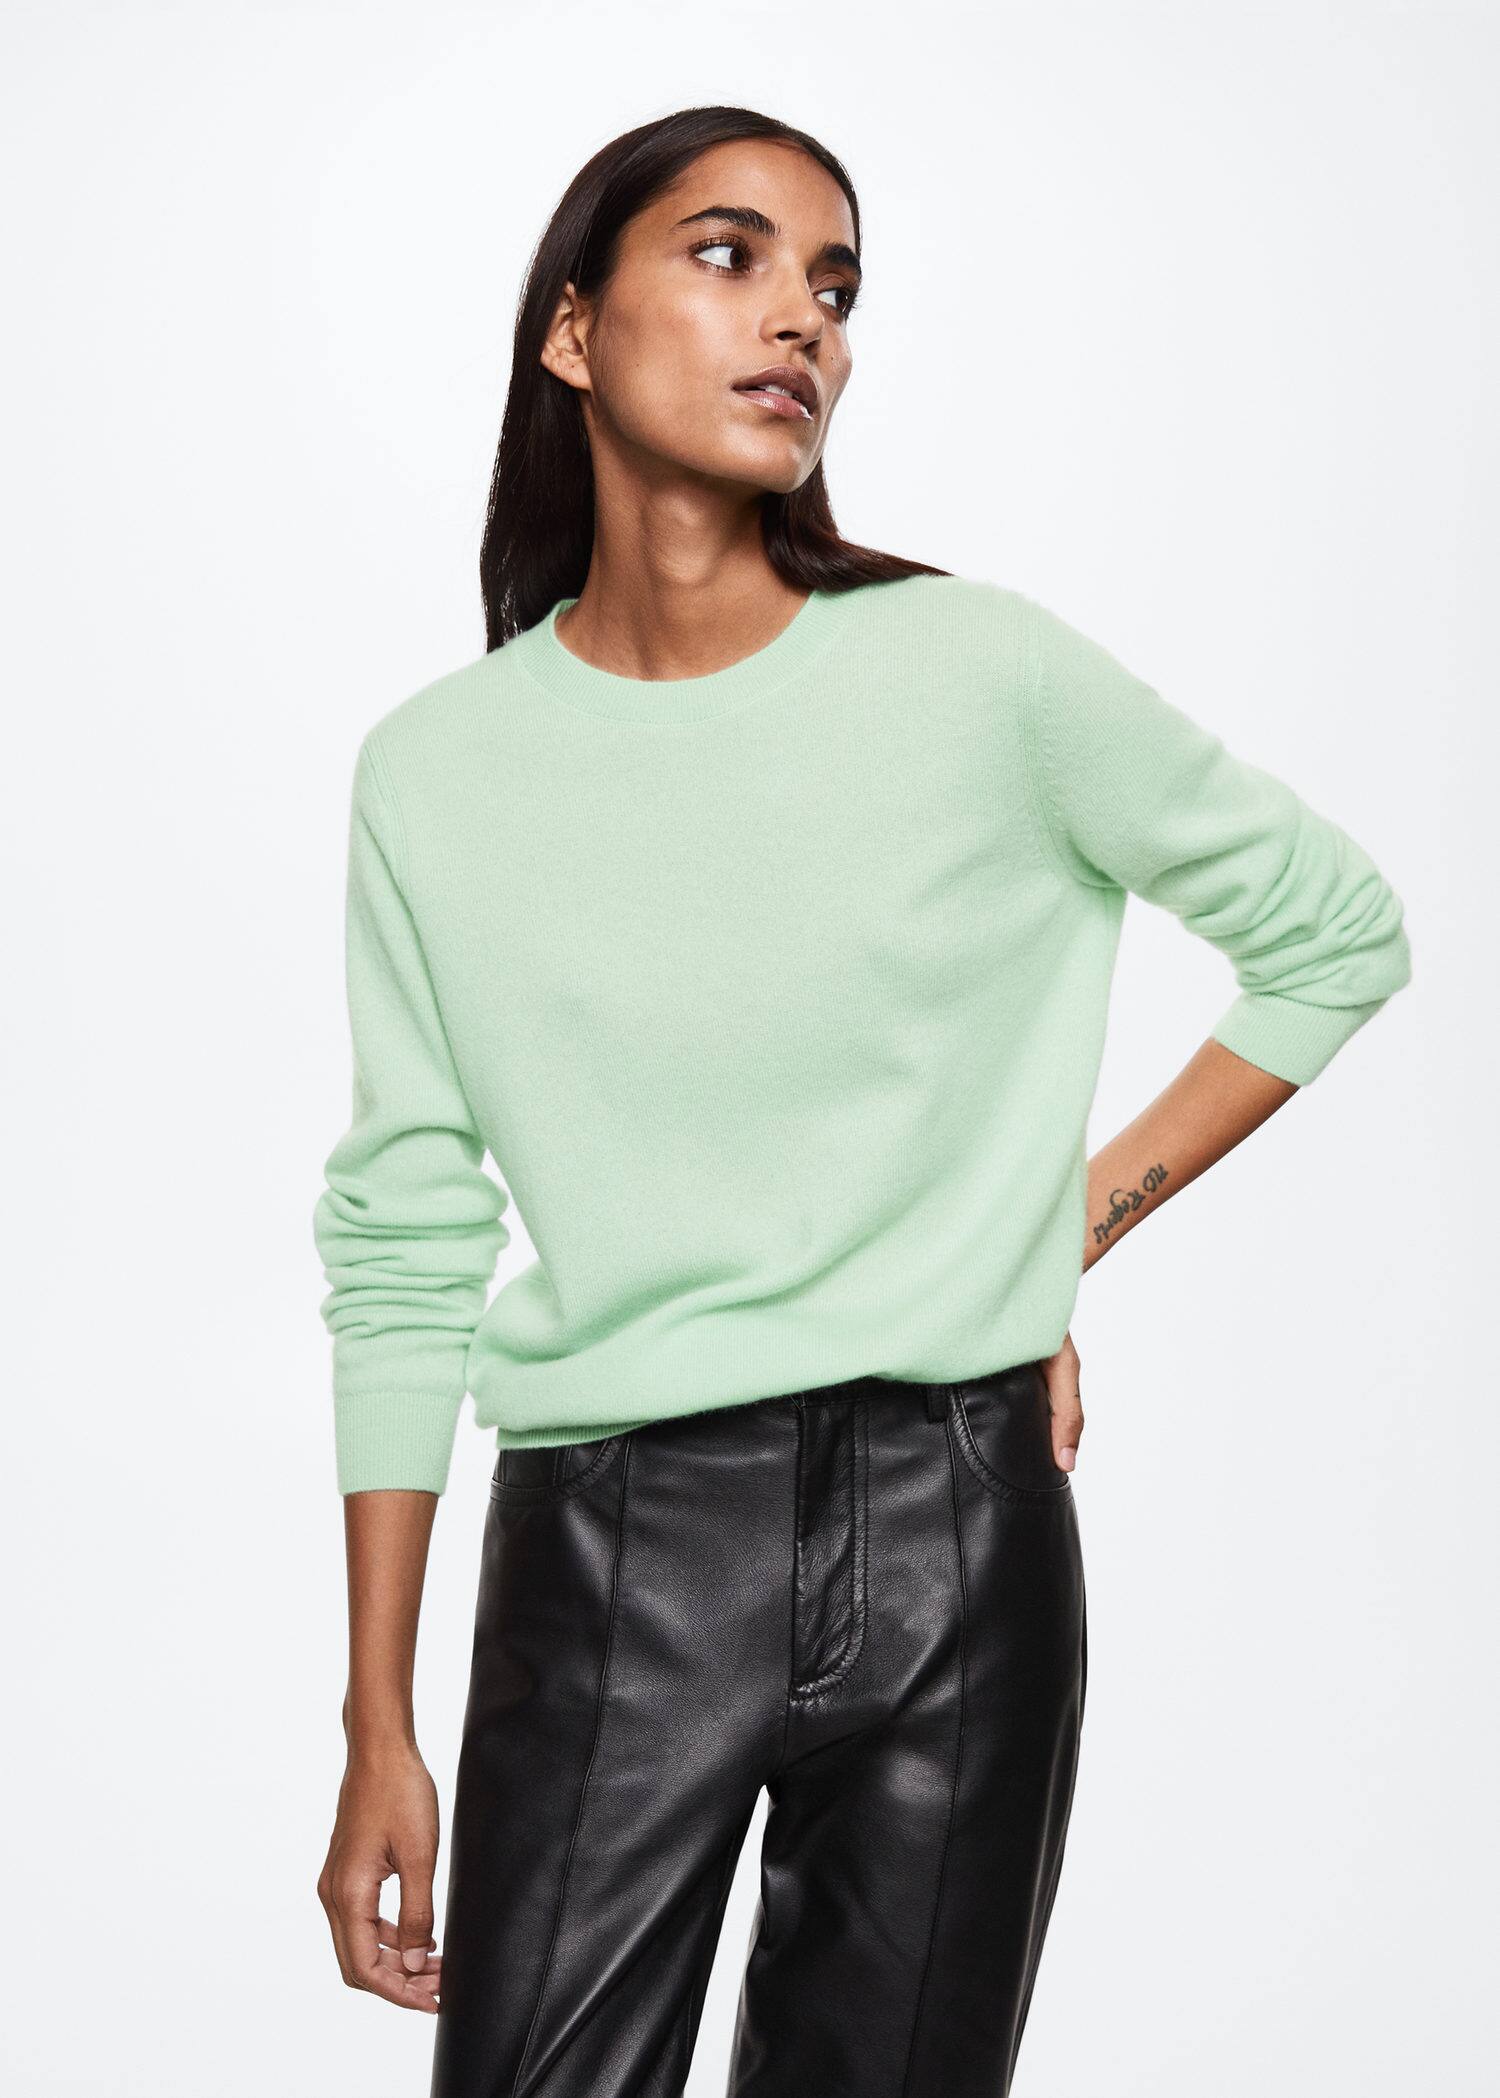 100% cashmere sweater - Náhled ve středové rovině